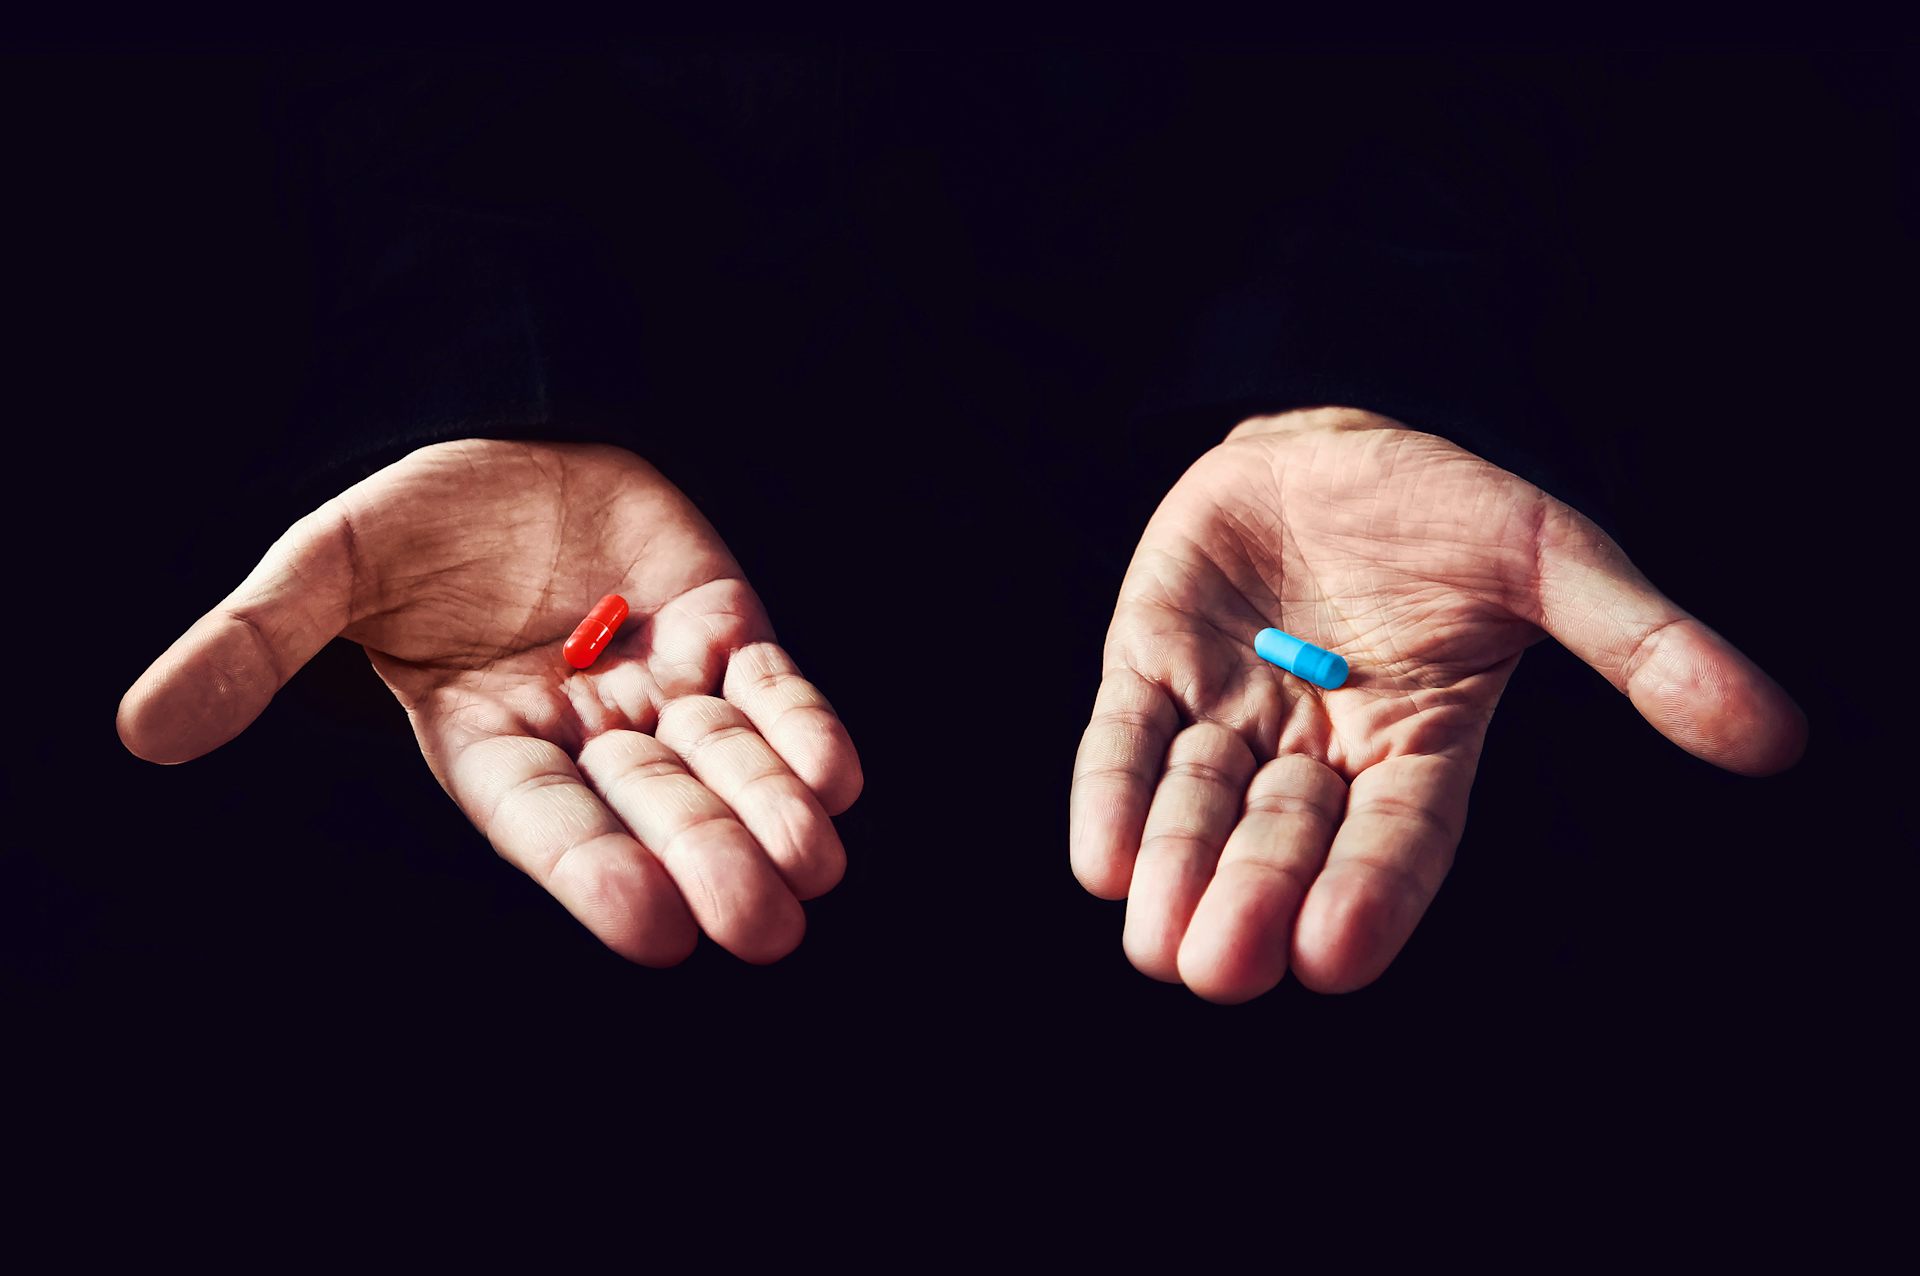 matrix red pill or blue pill